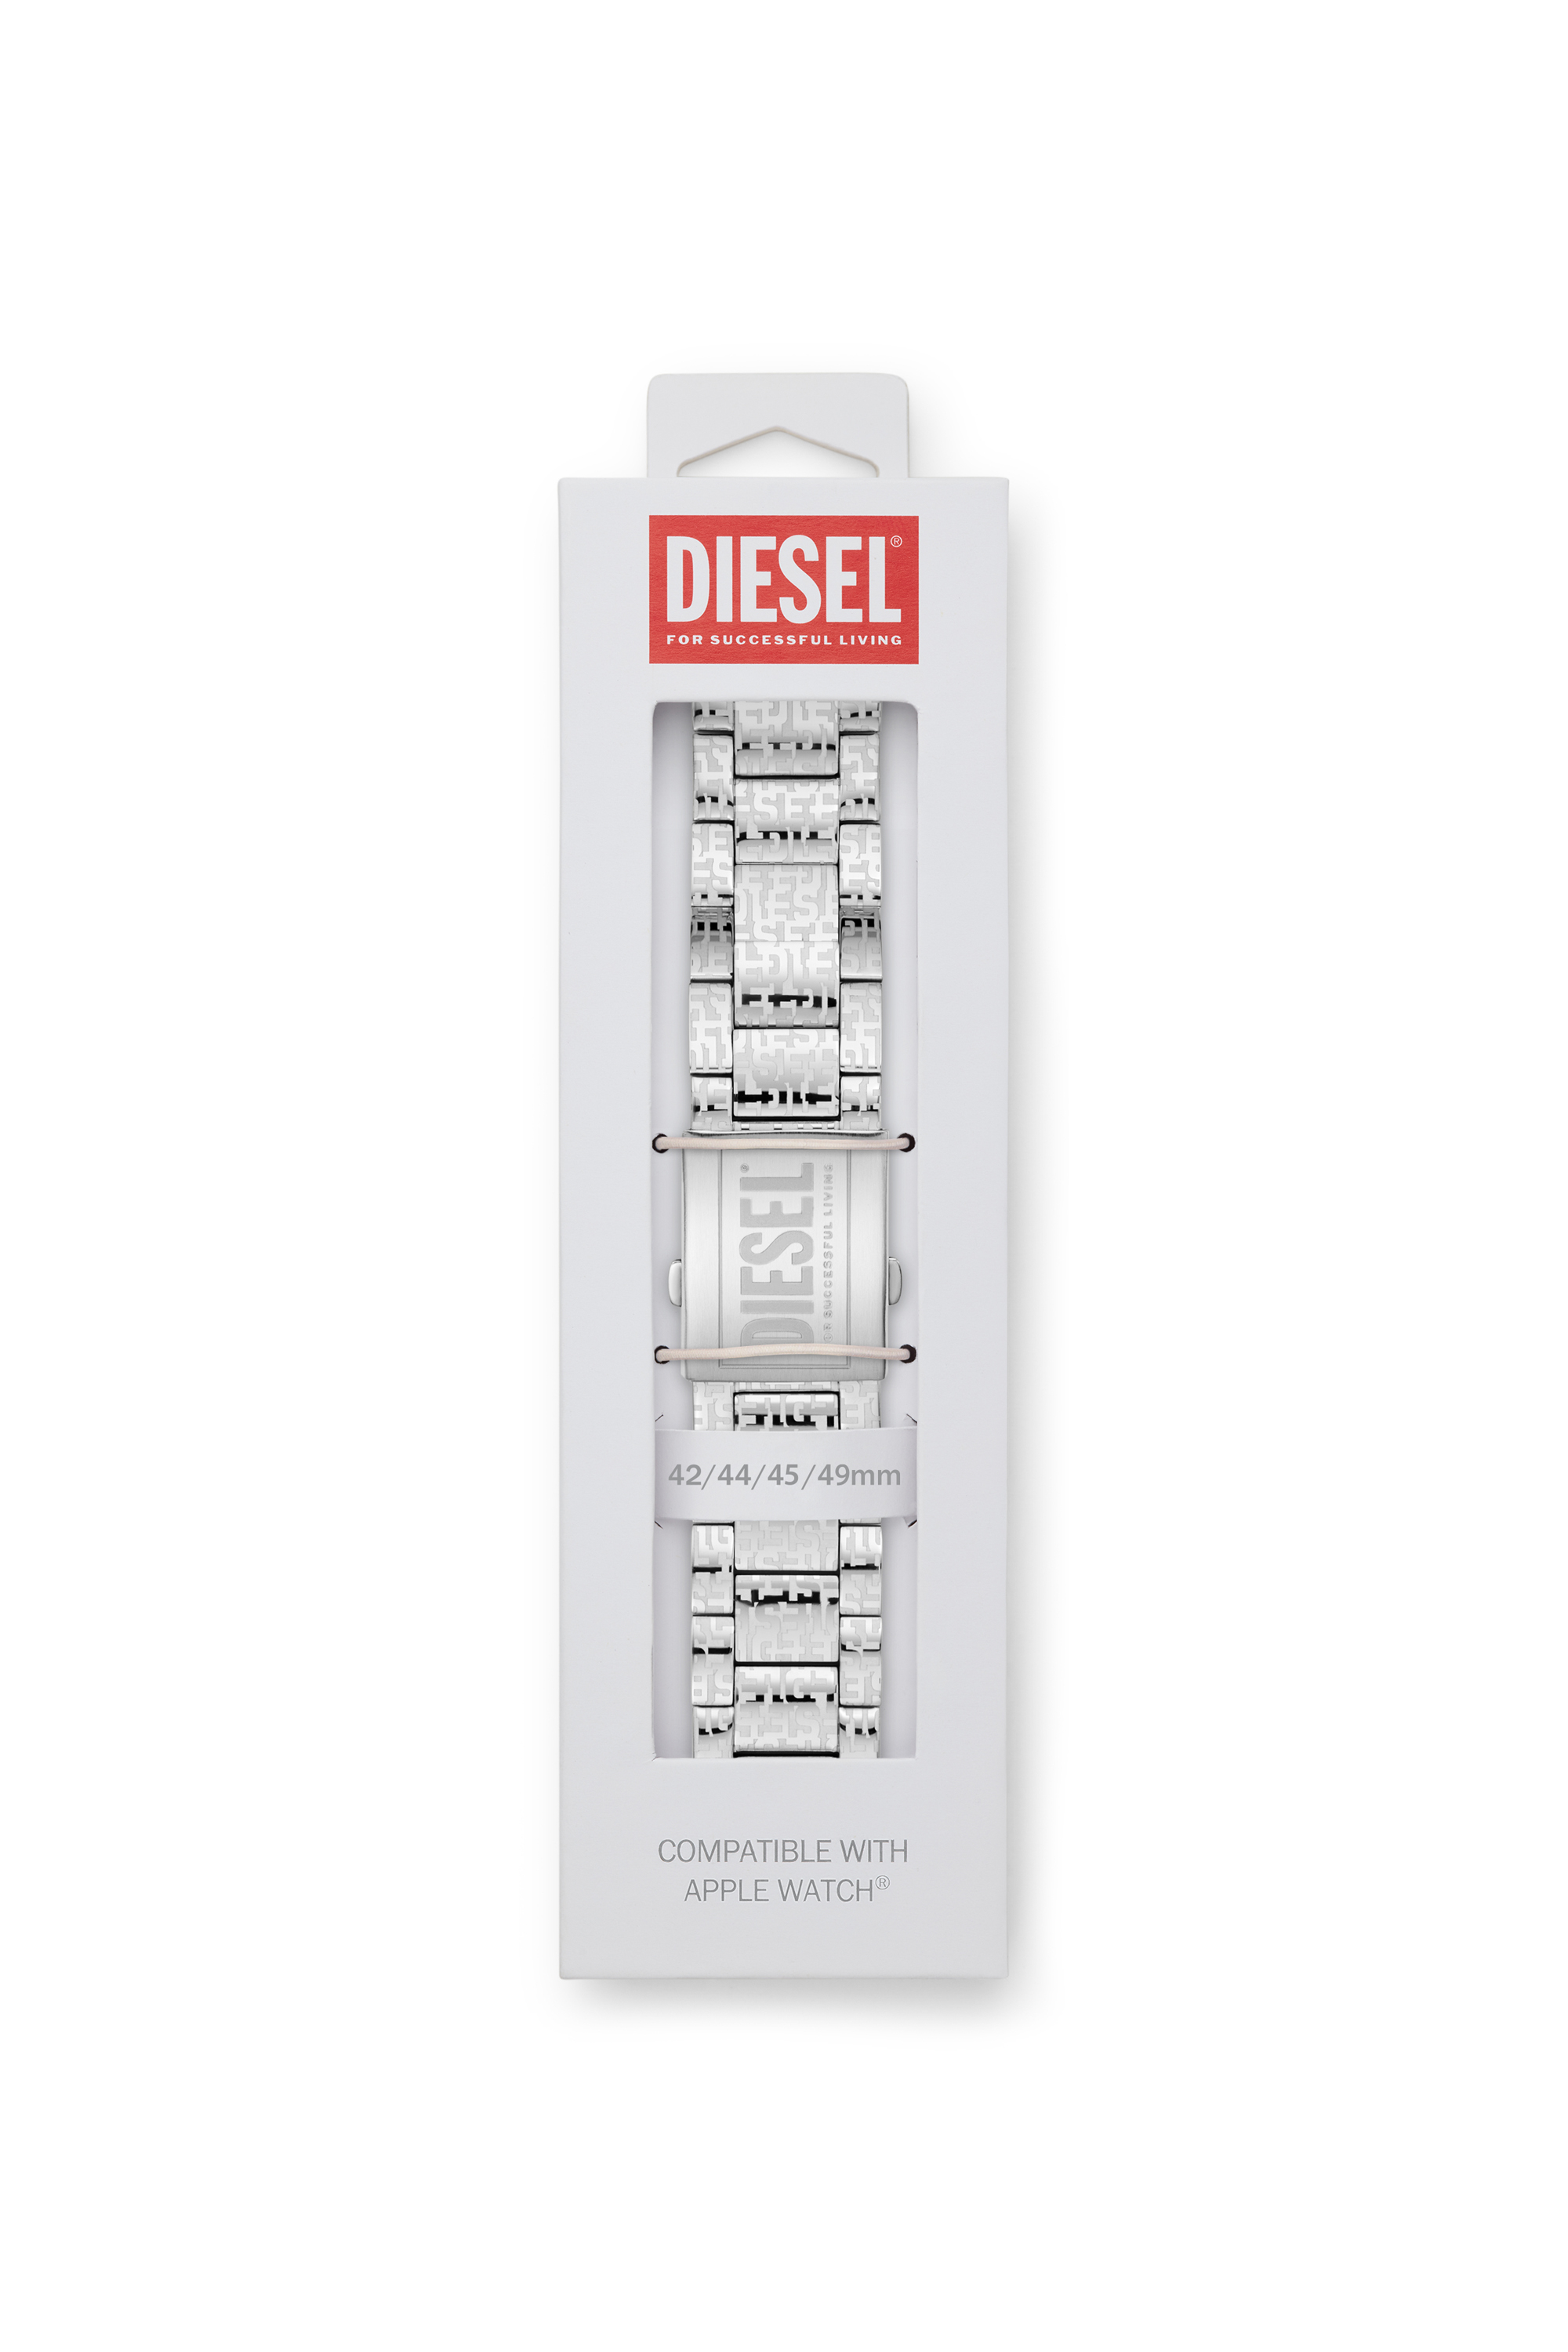 Diesel - DSS0017, Silver - Image 2